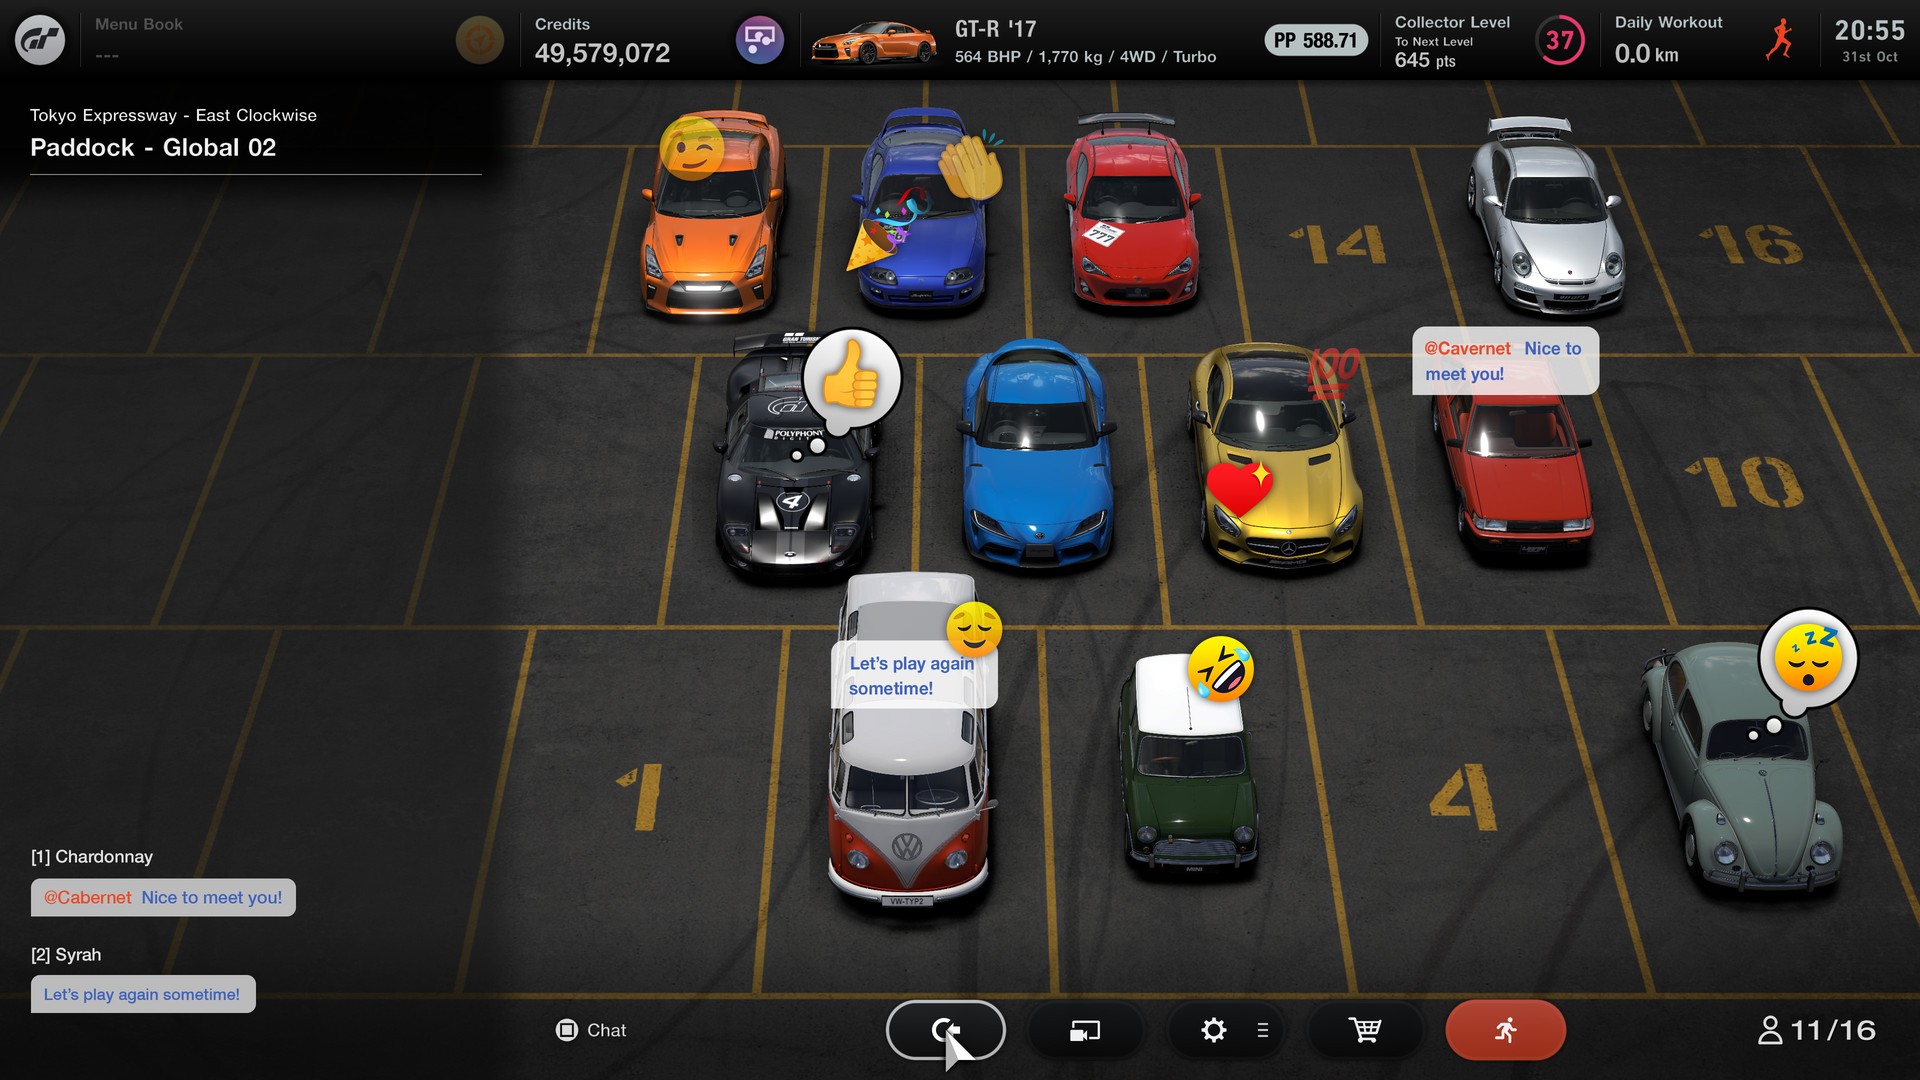 Gran Turismo 7: análisis, coches y circuitos disponibles